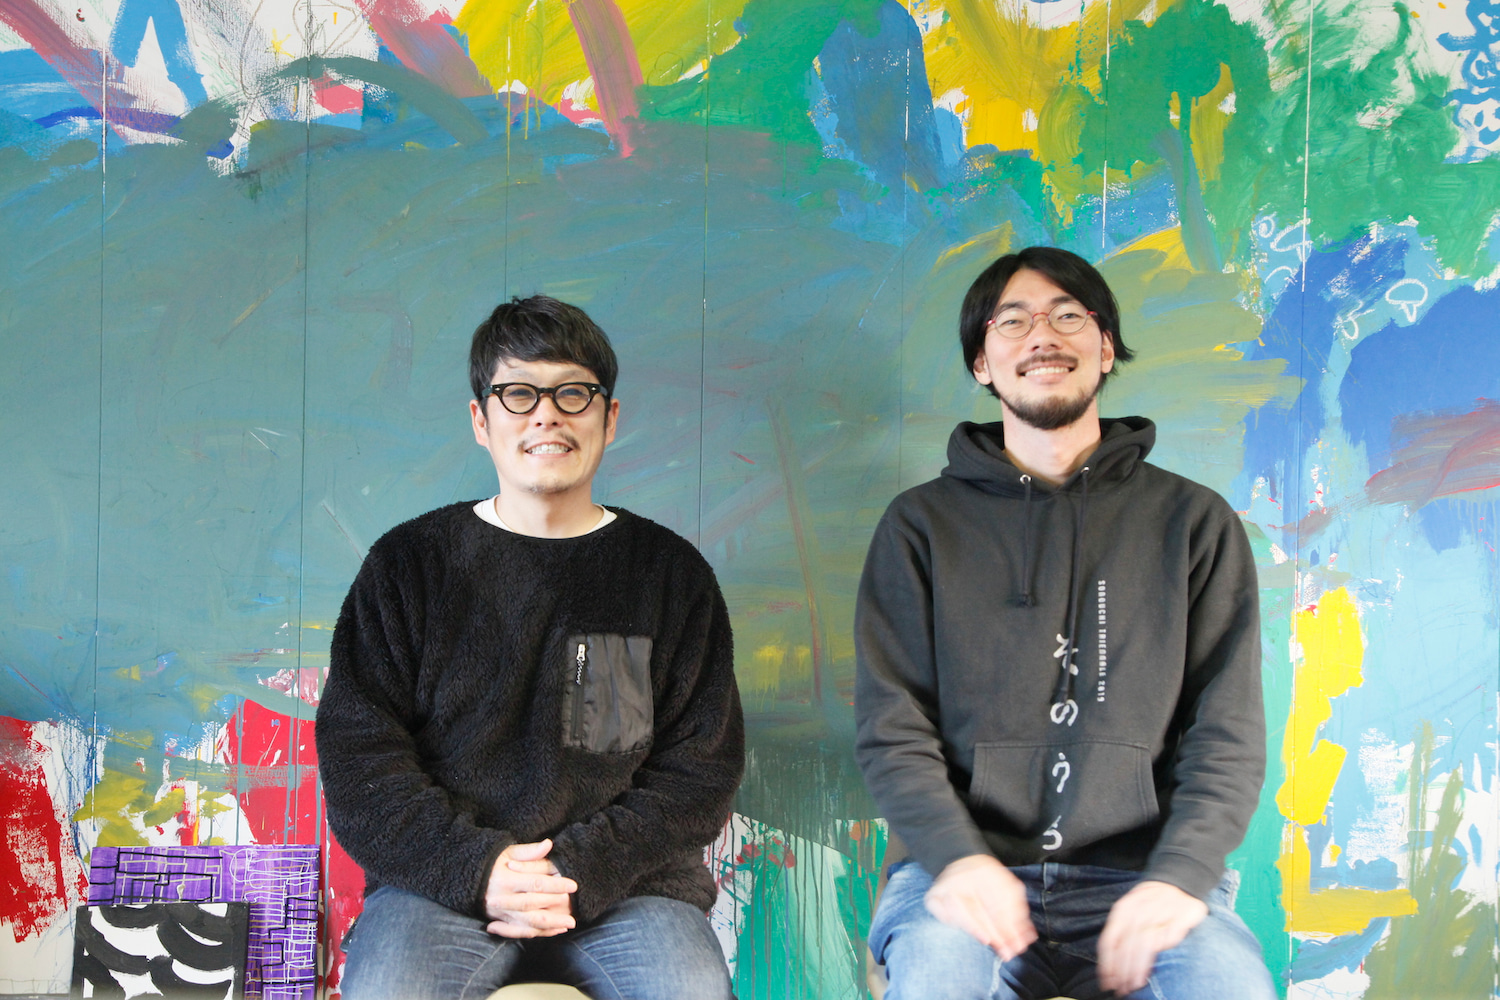 左：中野さんと右：丹正さんが、並んで座っている写真です。絵の具がカラフルに塗られた壁の前で、めがねをかけた二人が笑っています